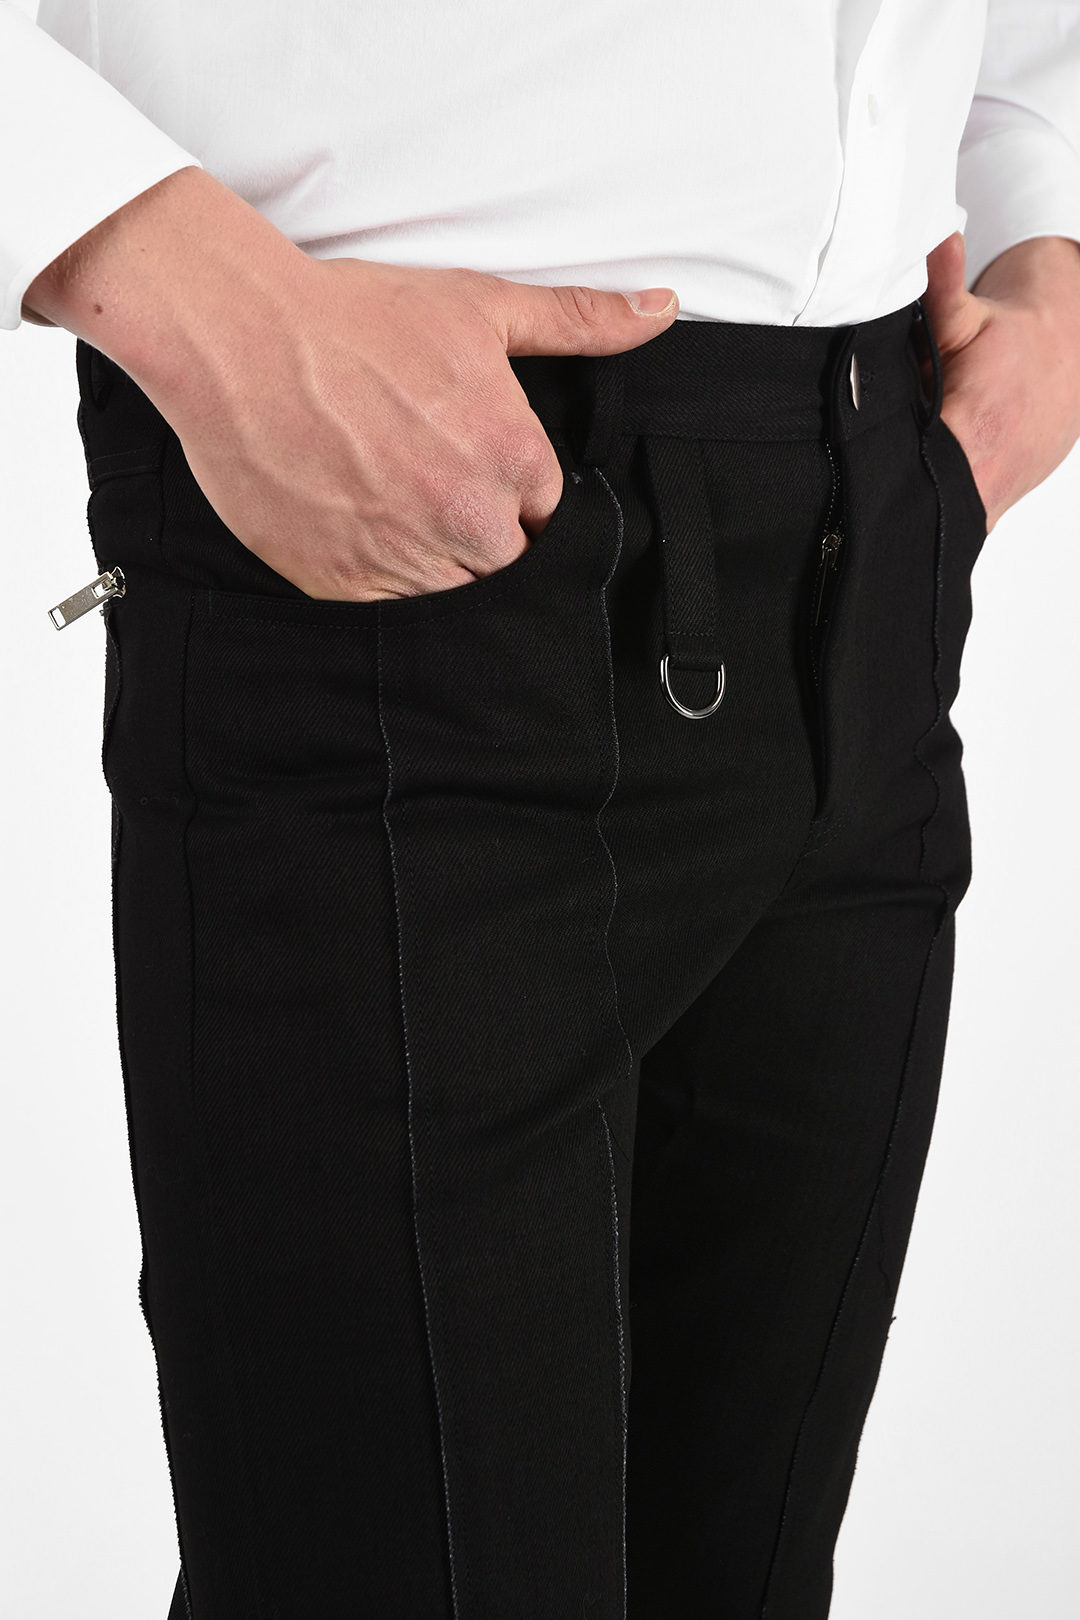 Men Casual Business Pants Versatile Fashion Stretch Social Pencil Pants  Soild Color Slim Fit Small Feet Suit Trousers - AliExpress